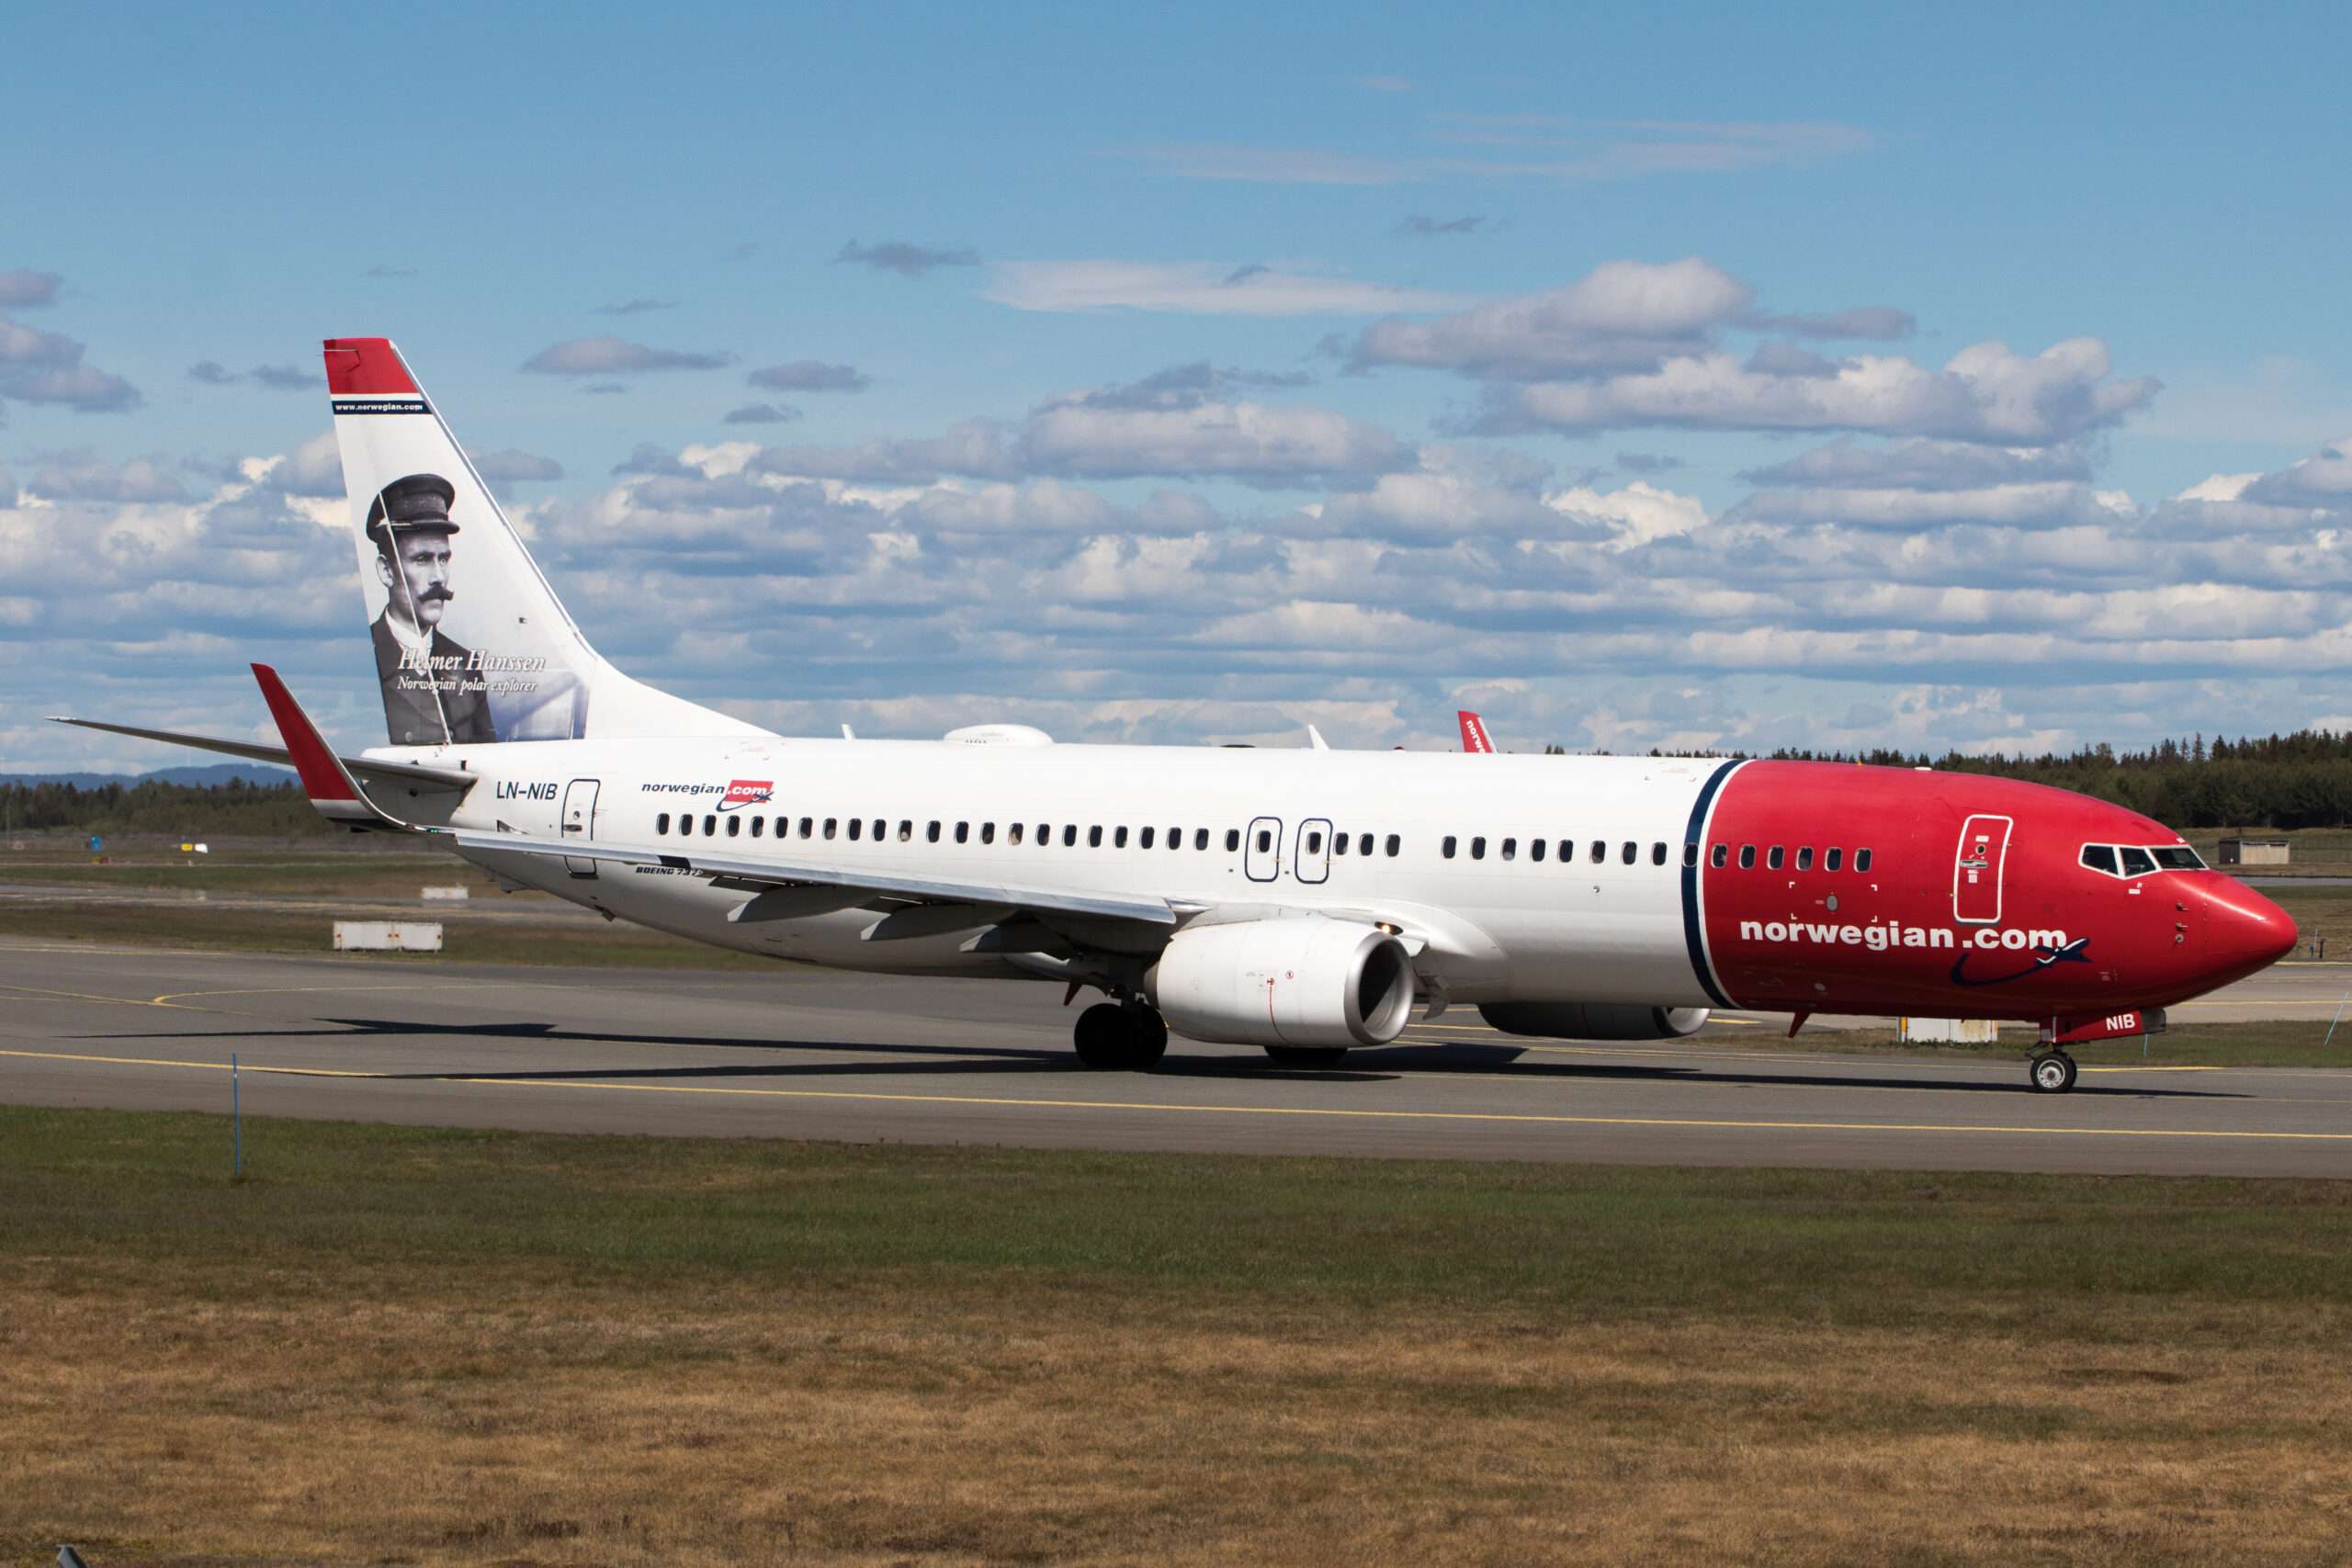 Norway, Sweden & Denmark: Norwegian To Charter Flights for TUI